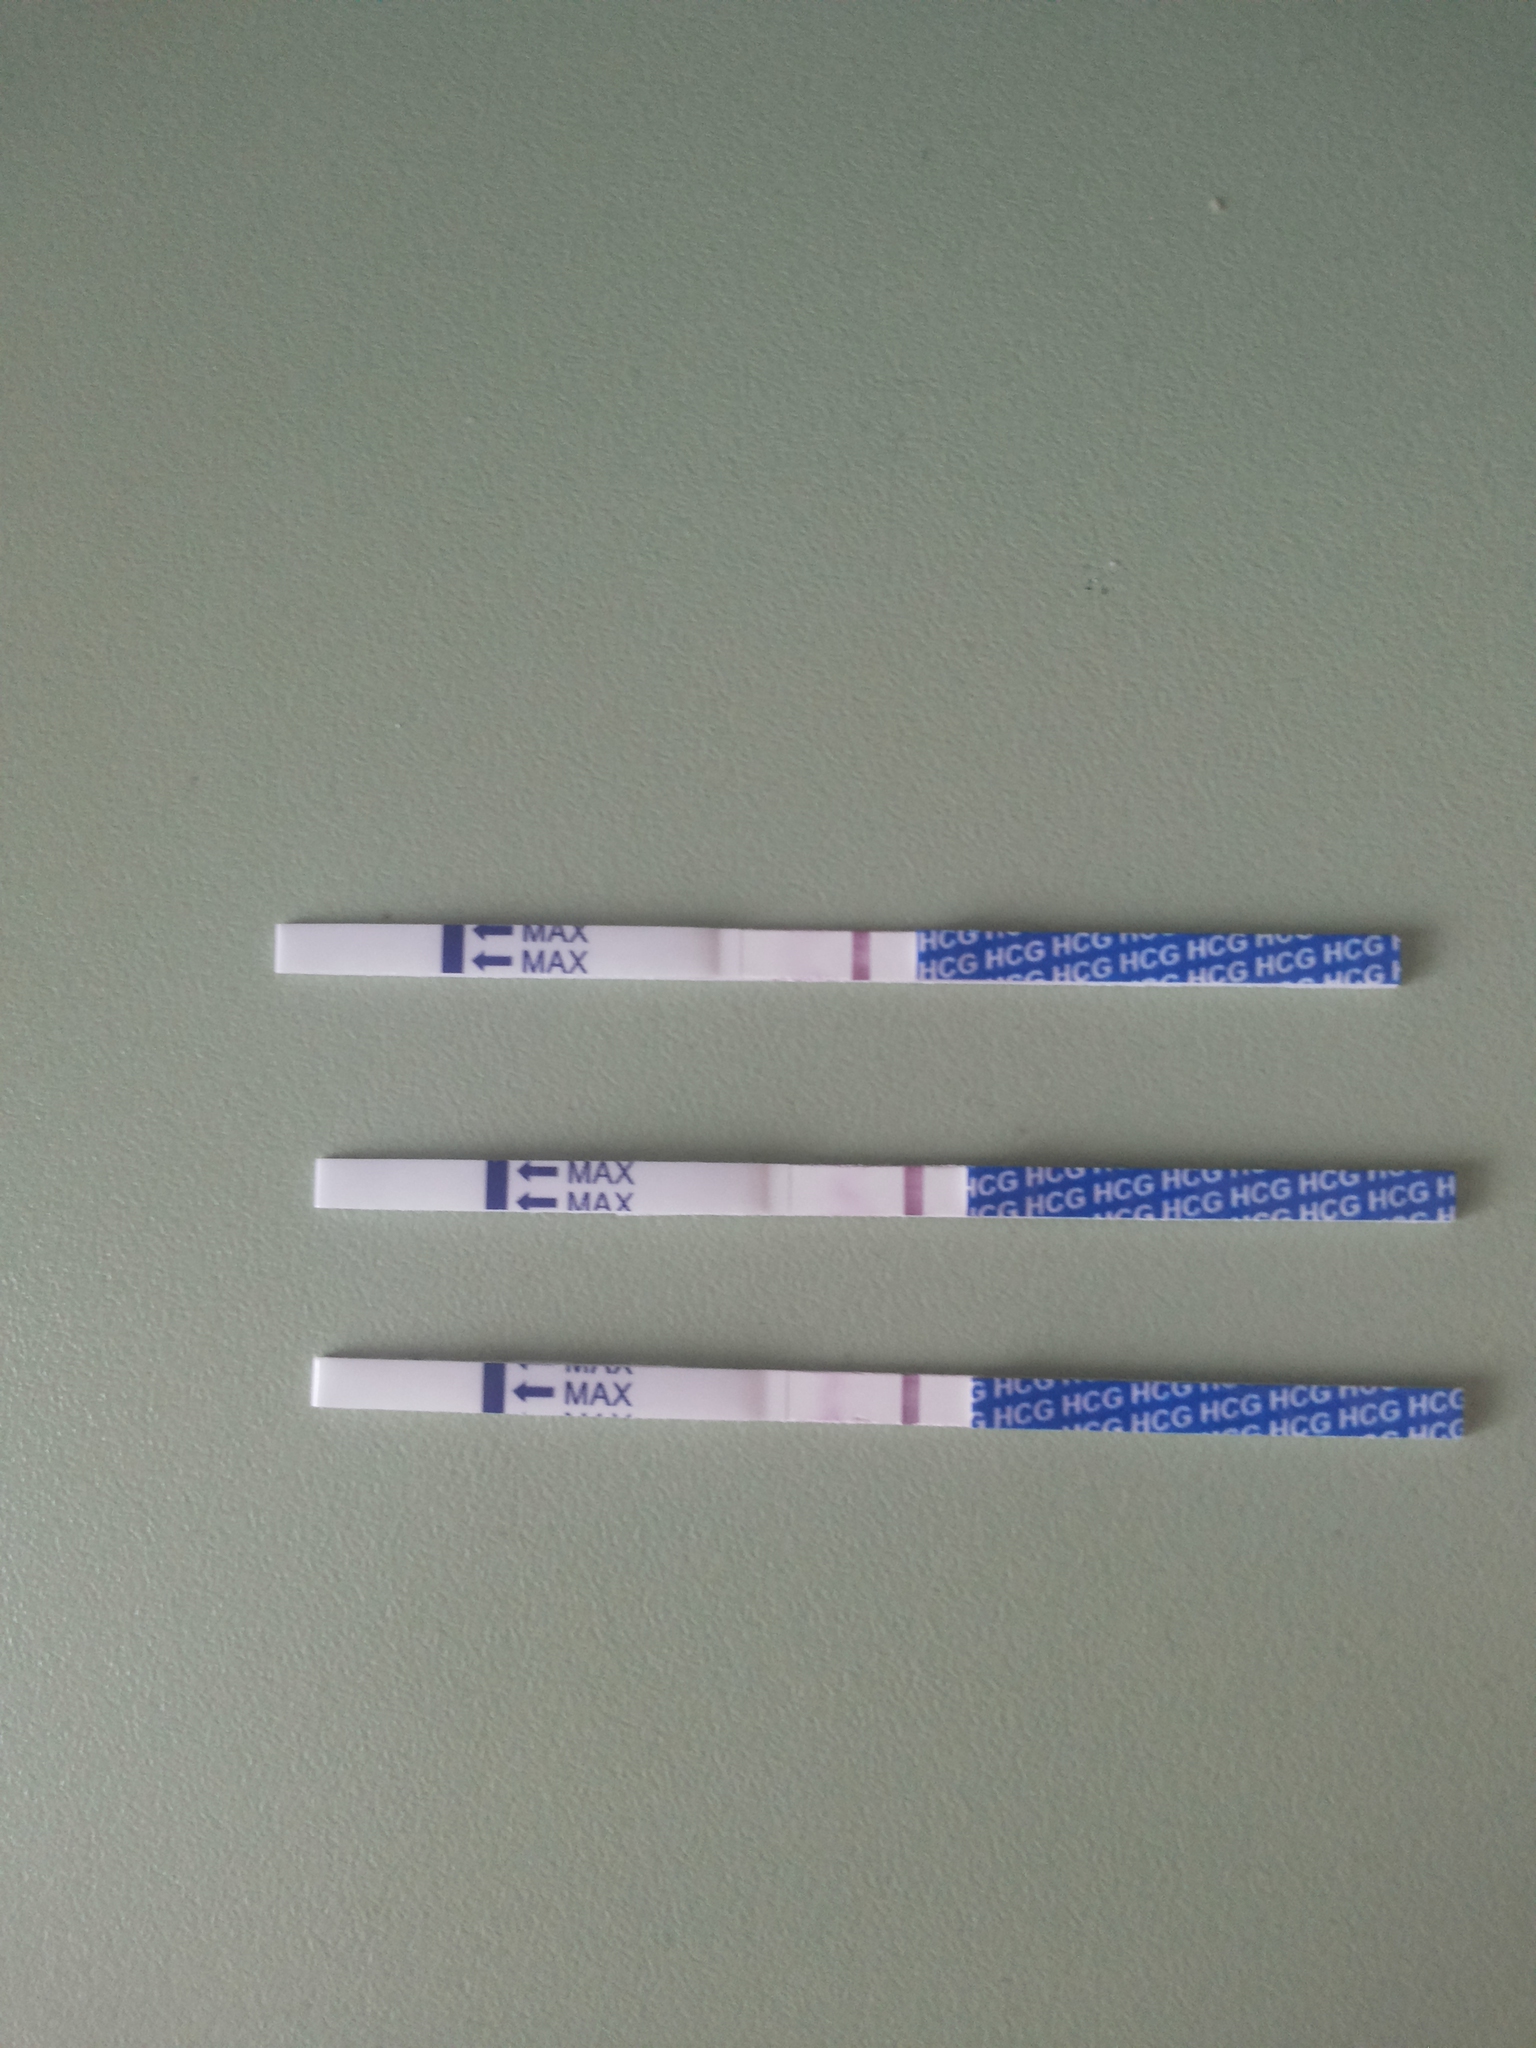 2 теста на беременность положительные. Тест на беременность 2 poloska. Тест на беременность с 2 тест полосками. Тест на беременность 2 полоски два теста. Тест на беременность Классик 1 тест полоски.